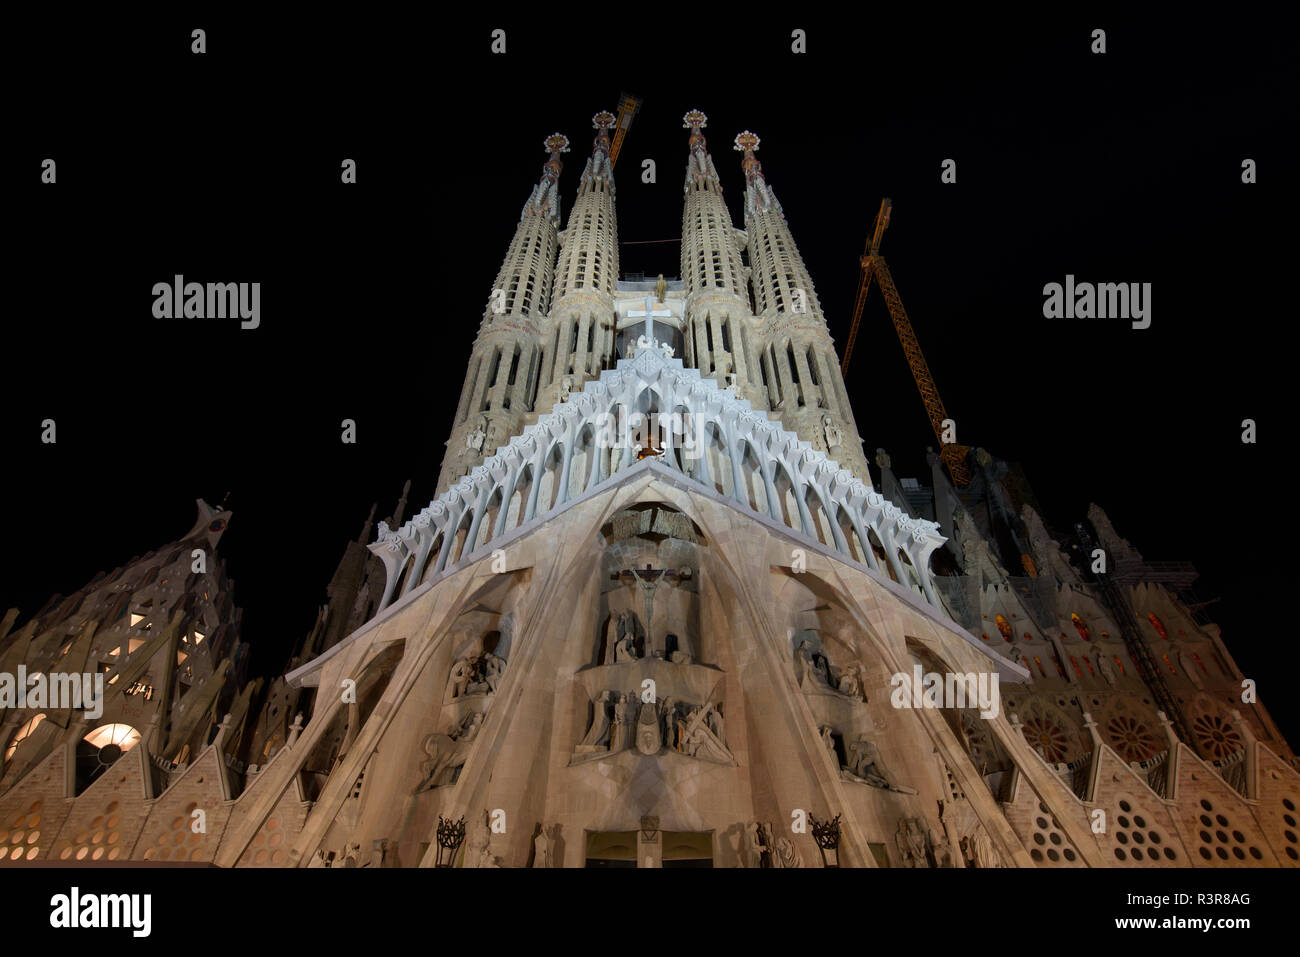 Vue de nuit sur la façade de la Passion de La Sagrada Familia, la cathédrale conçue par Gaudi à Barcelone, Espagne Banque D'Images